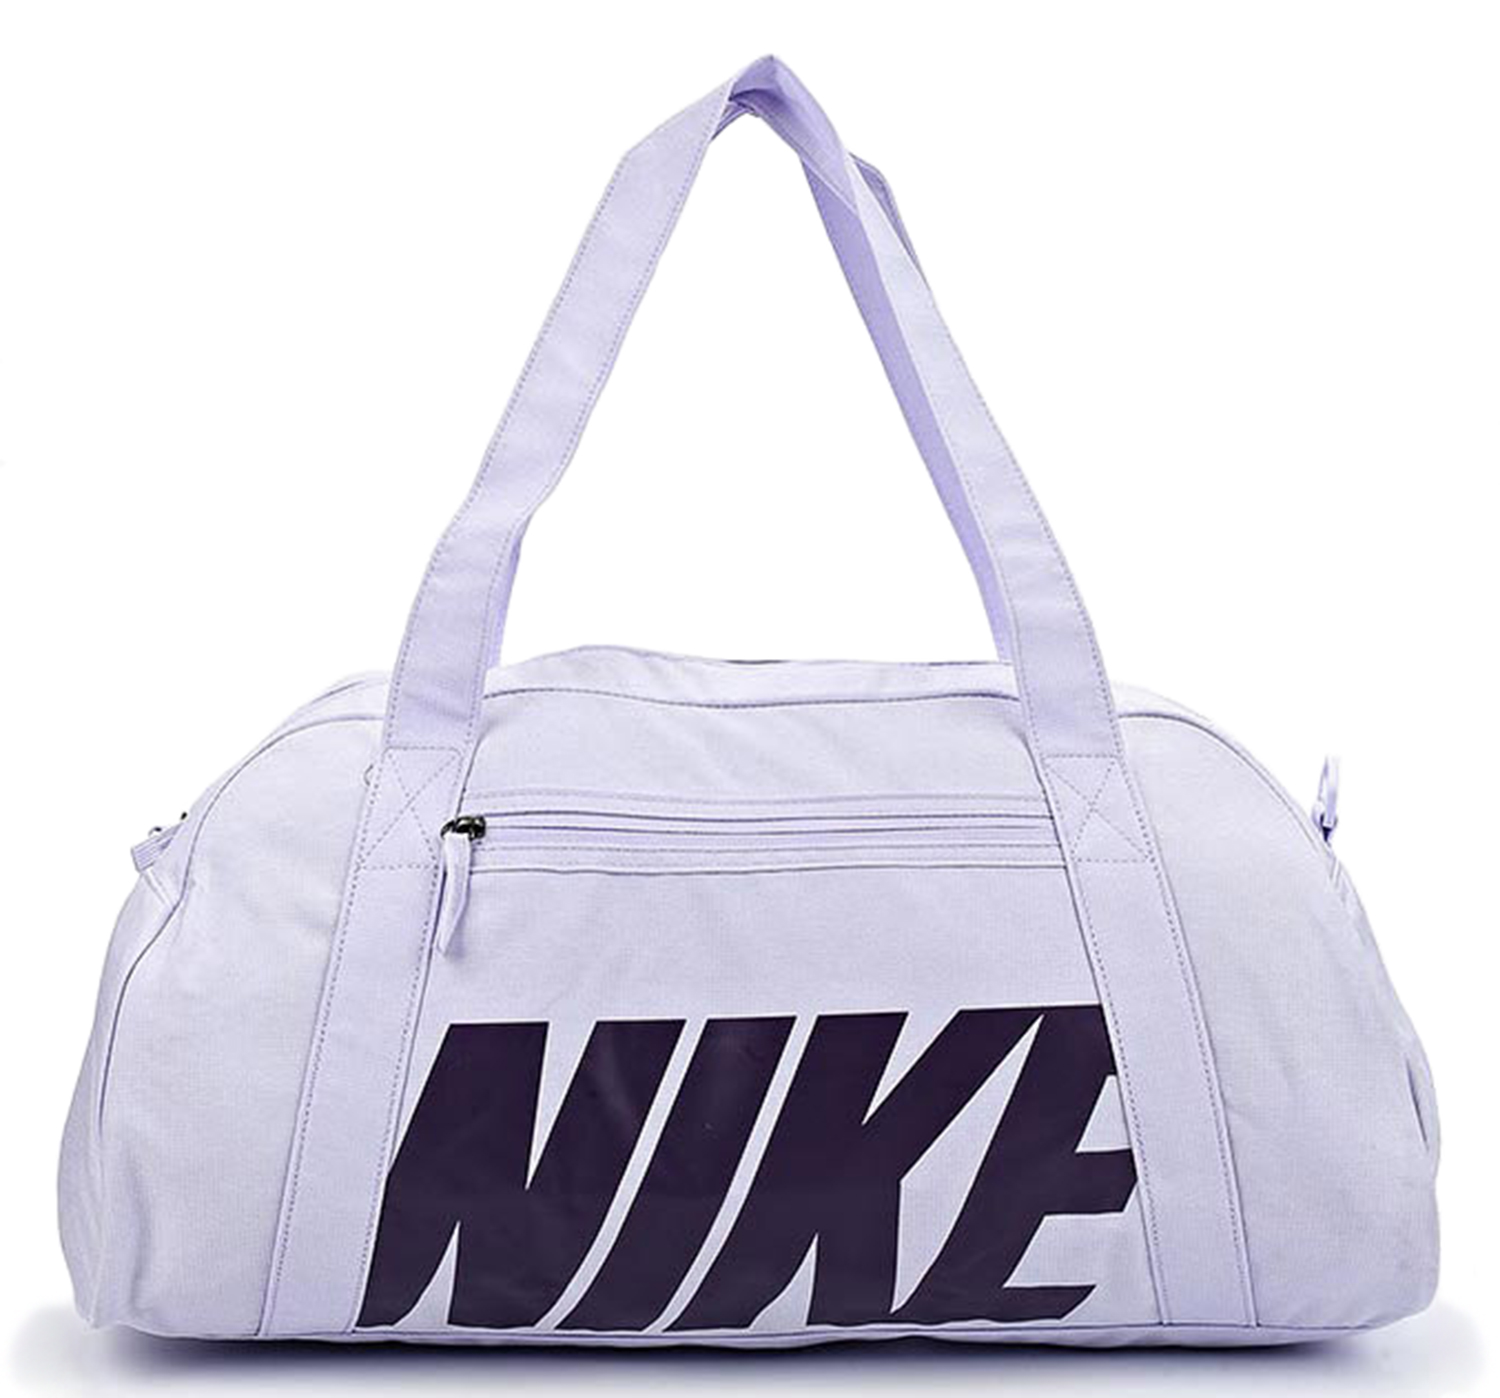 Белая спортивная сумка